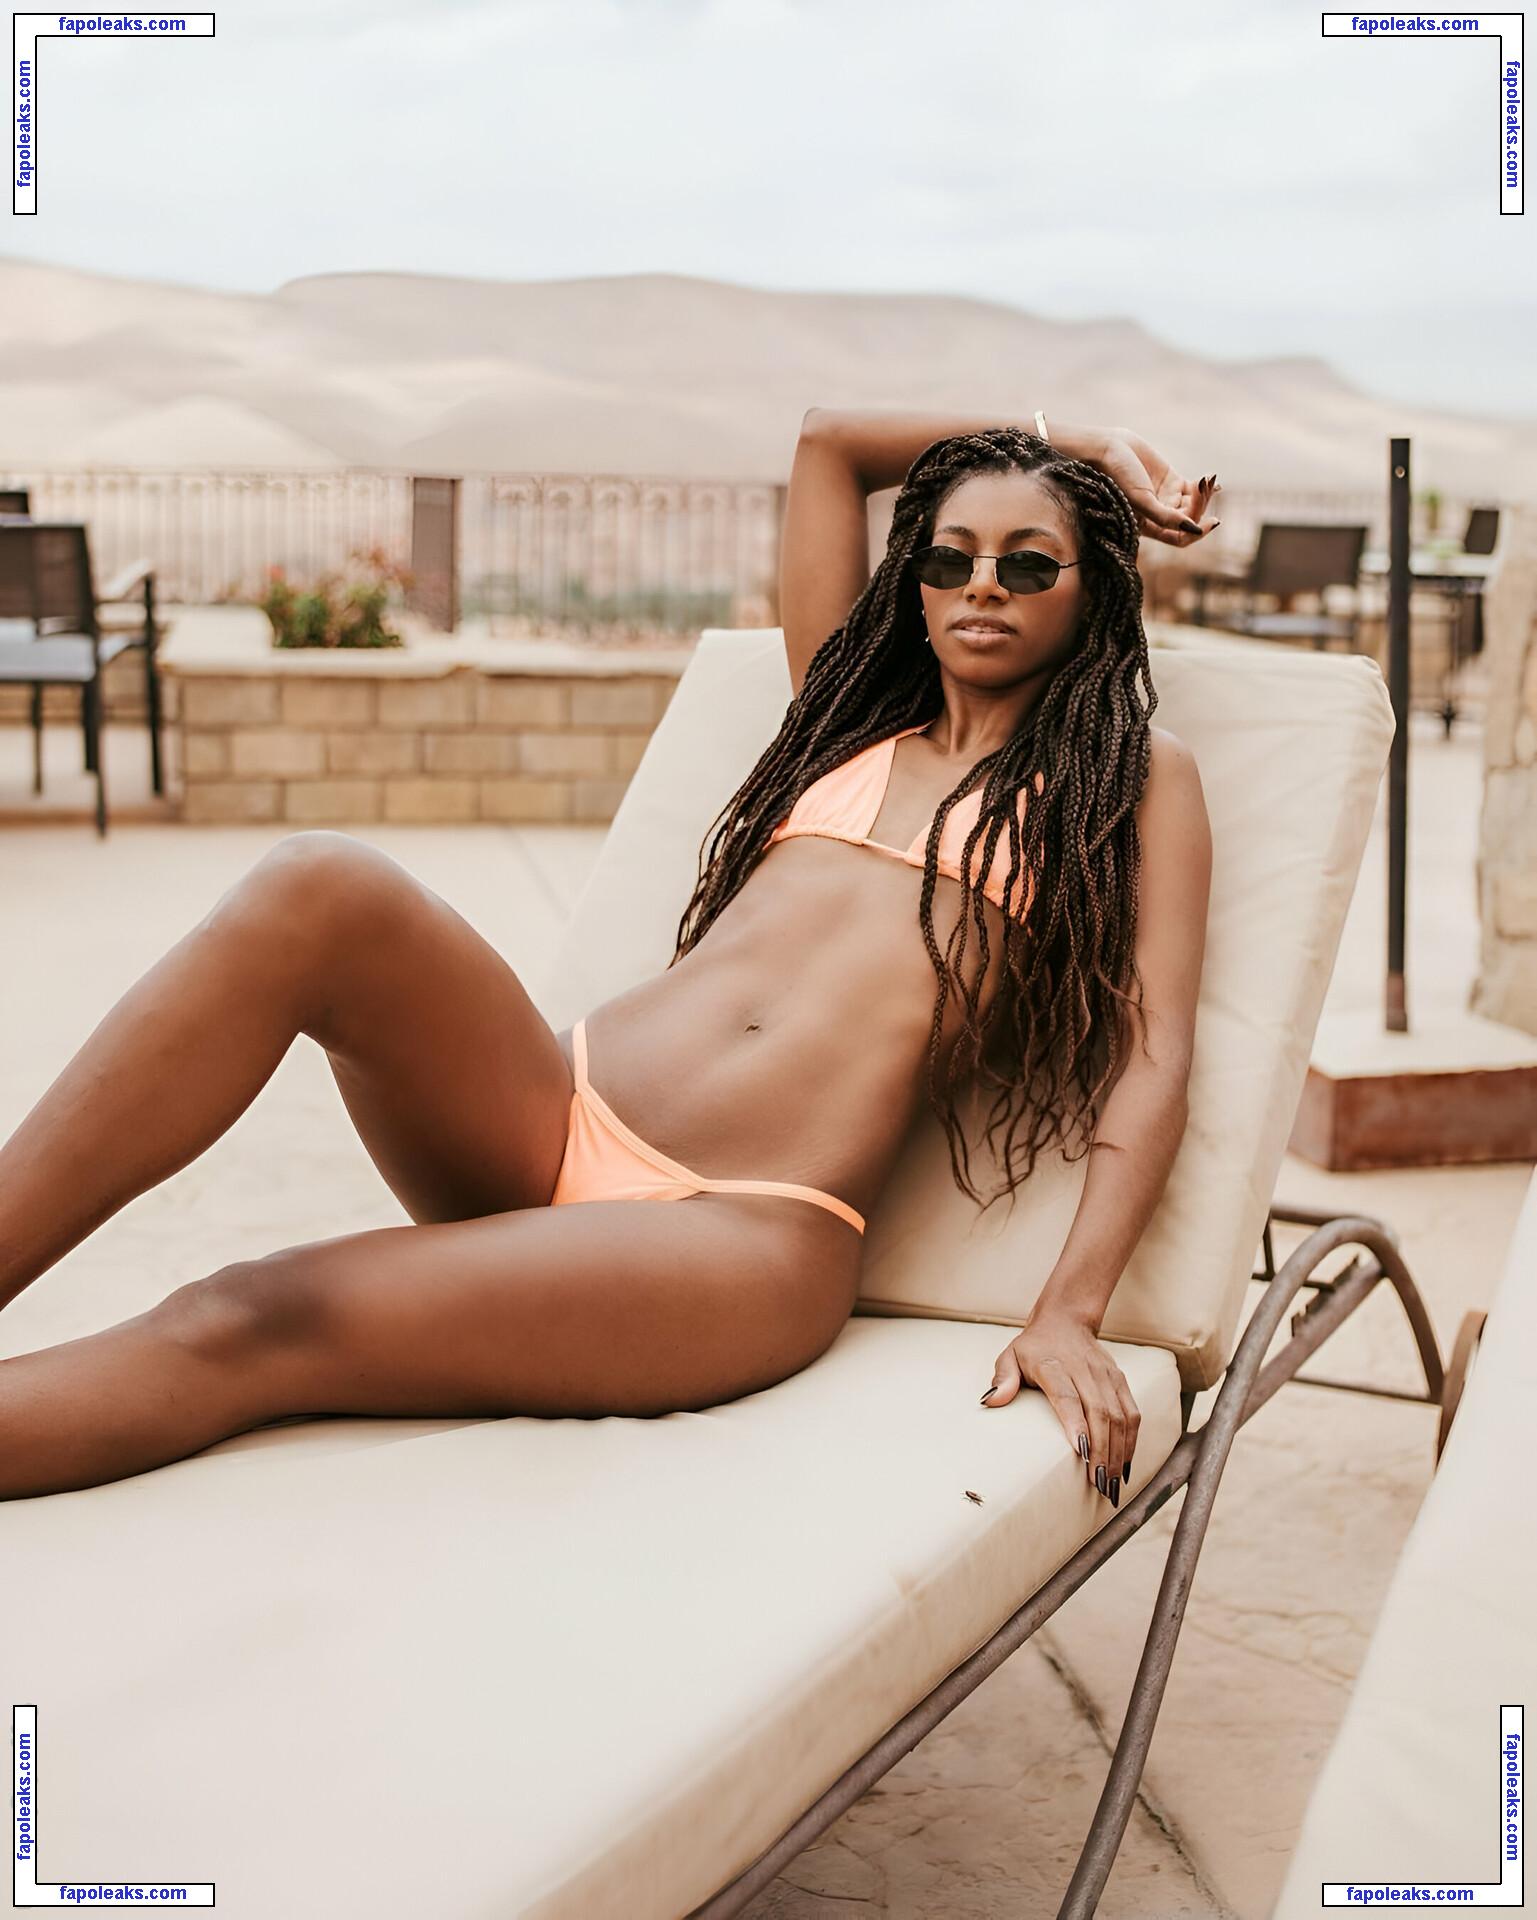 Tina Calamba / tinacalamba nude photo #0008 from OnlyFans